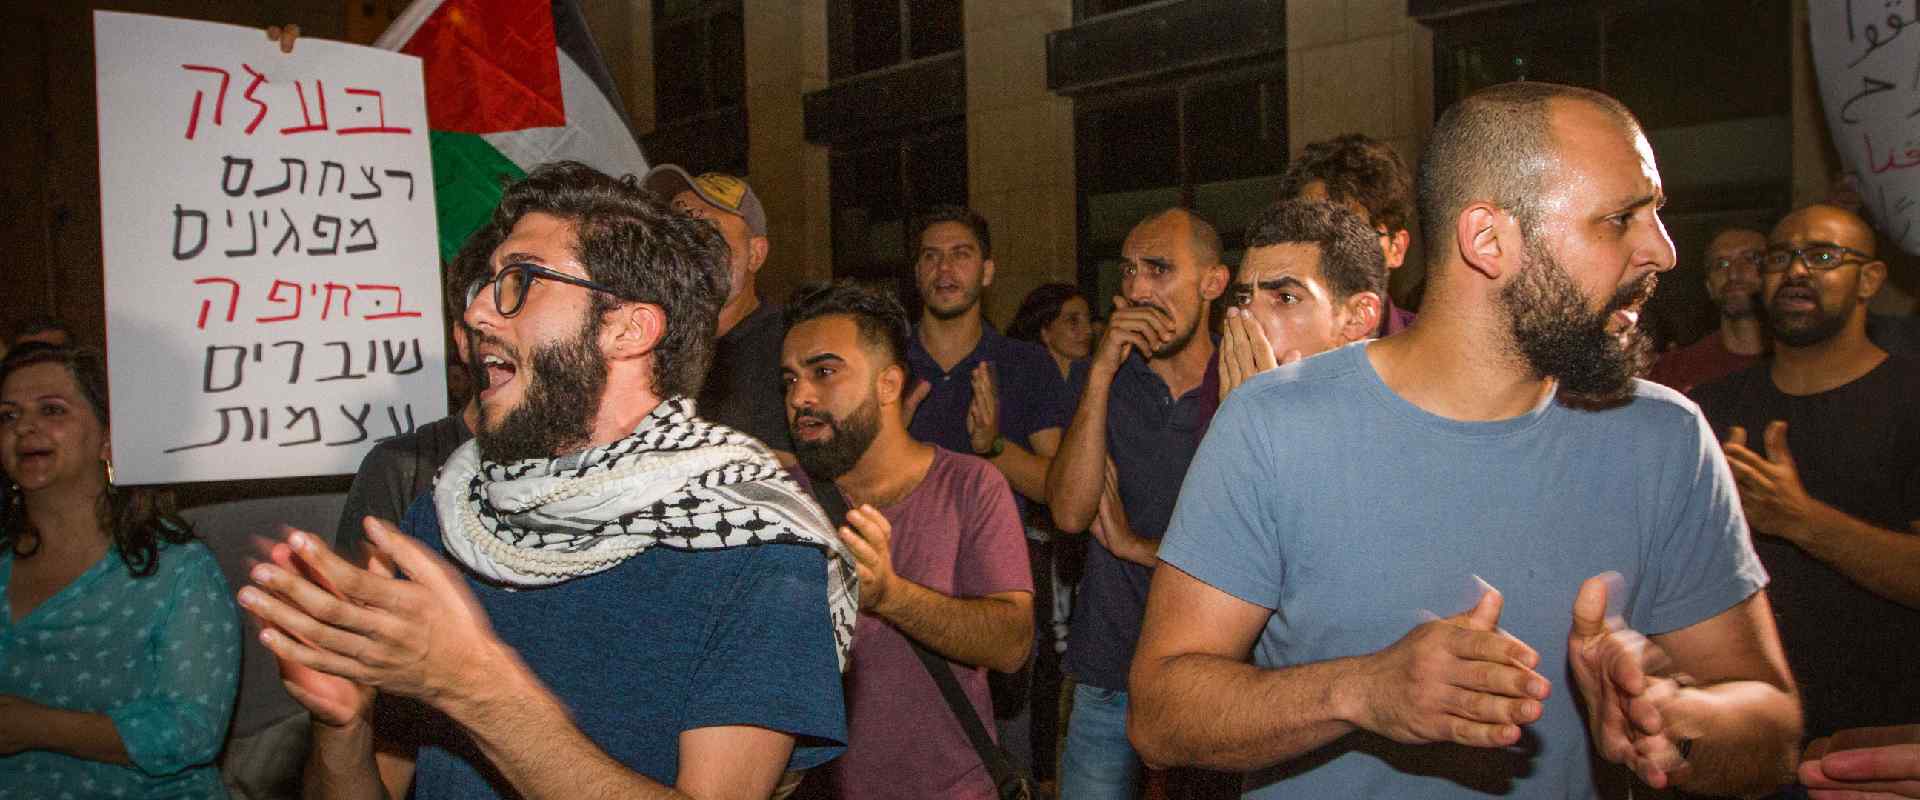 ערבים ישראלים מוחים על מעצר המפגינים בחיפה